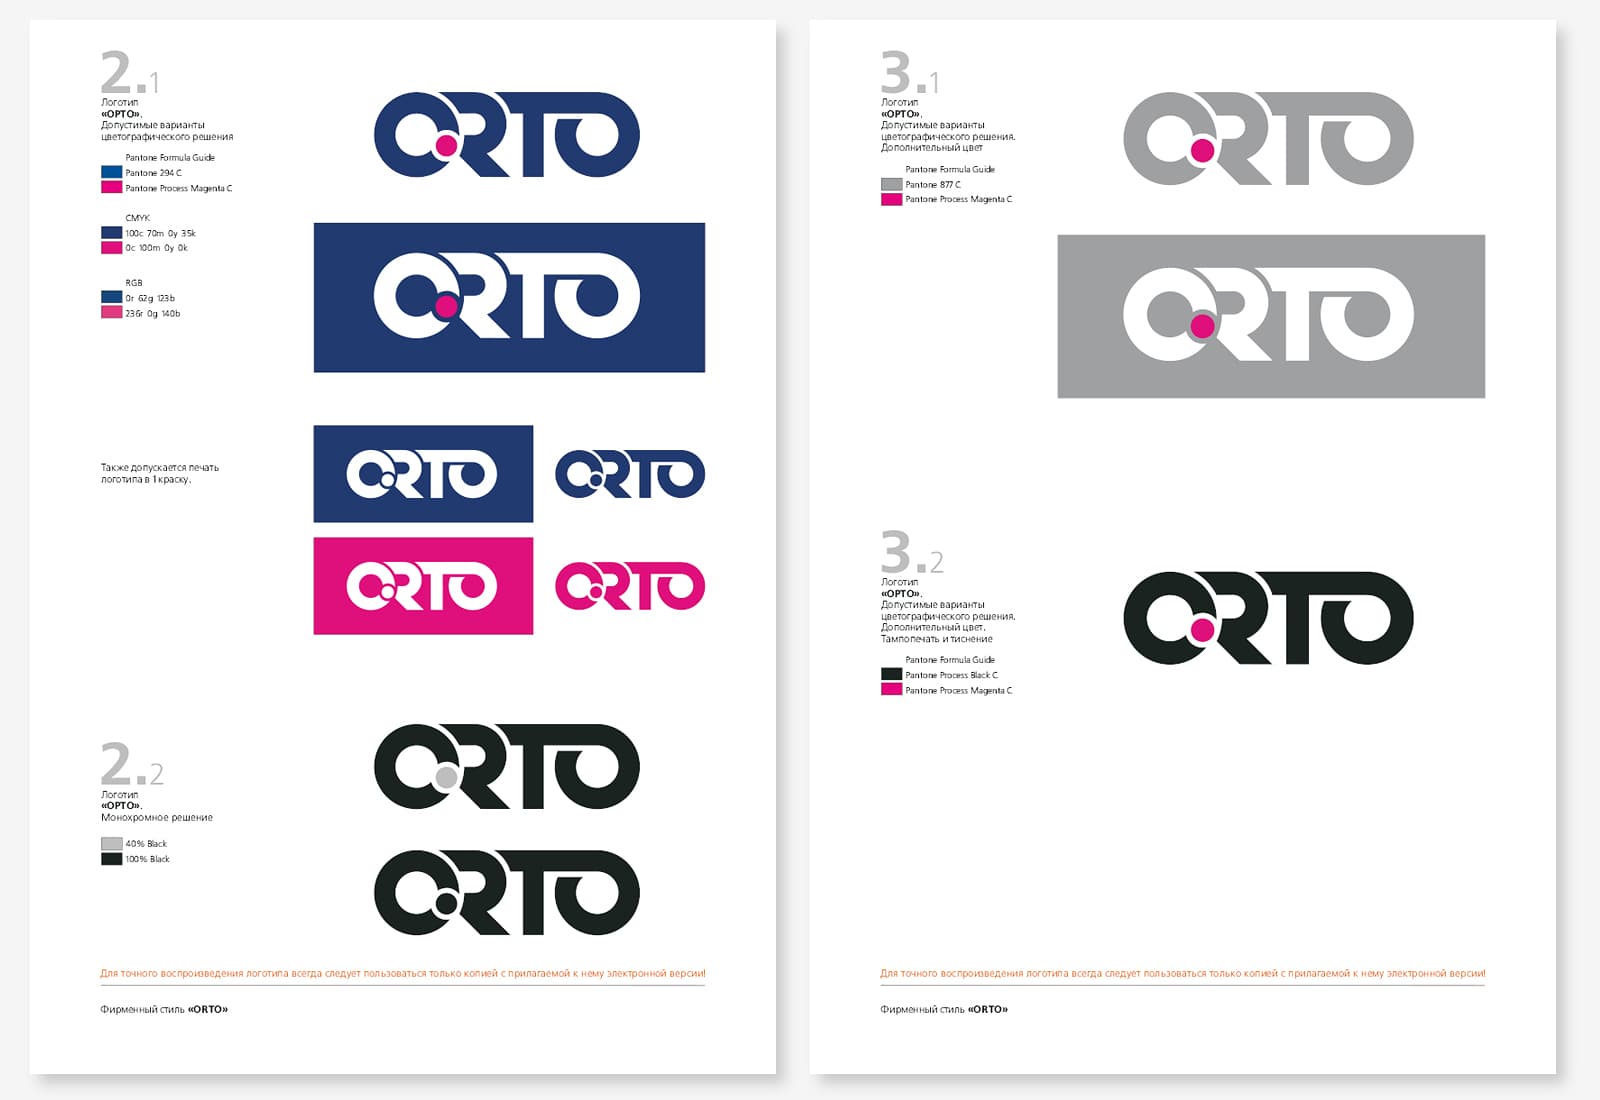 Разработка дизайна бренда, фирменного стиля и гайдлайна для производителя ортопедической продукции «ORTO»